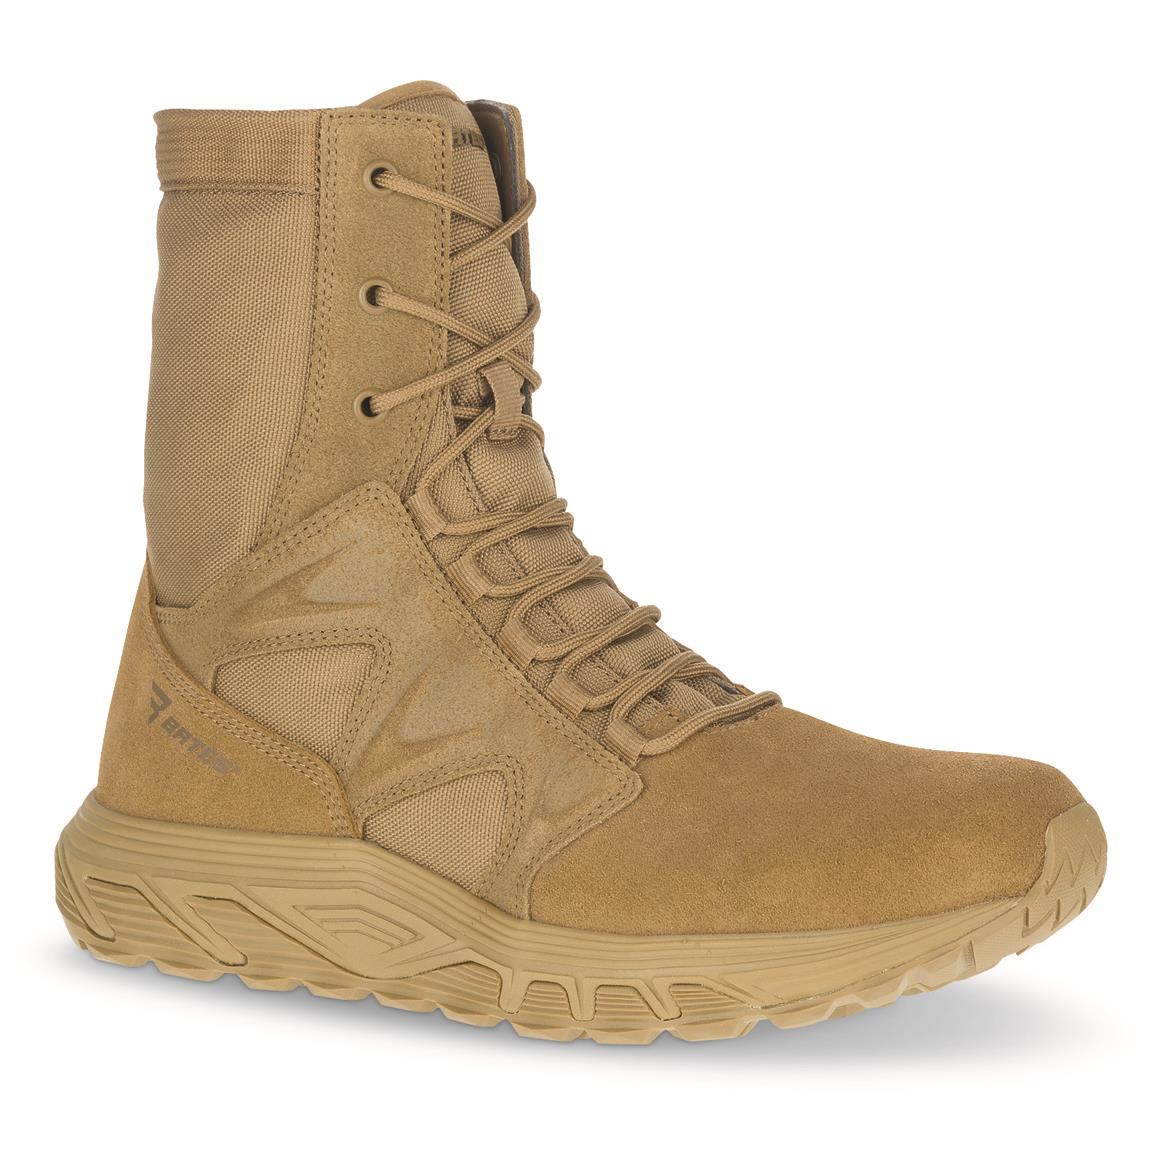 Bates Men's Rush Tall AR670-1 Tactical Boots, Coyote